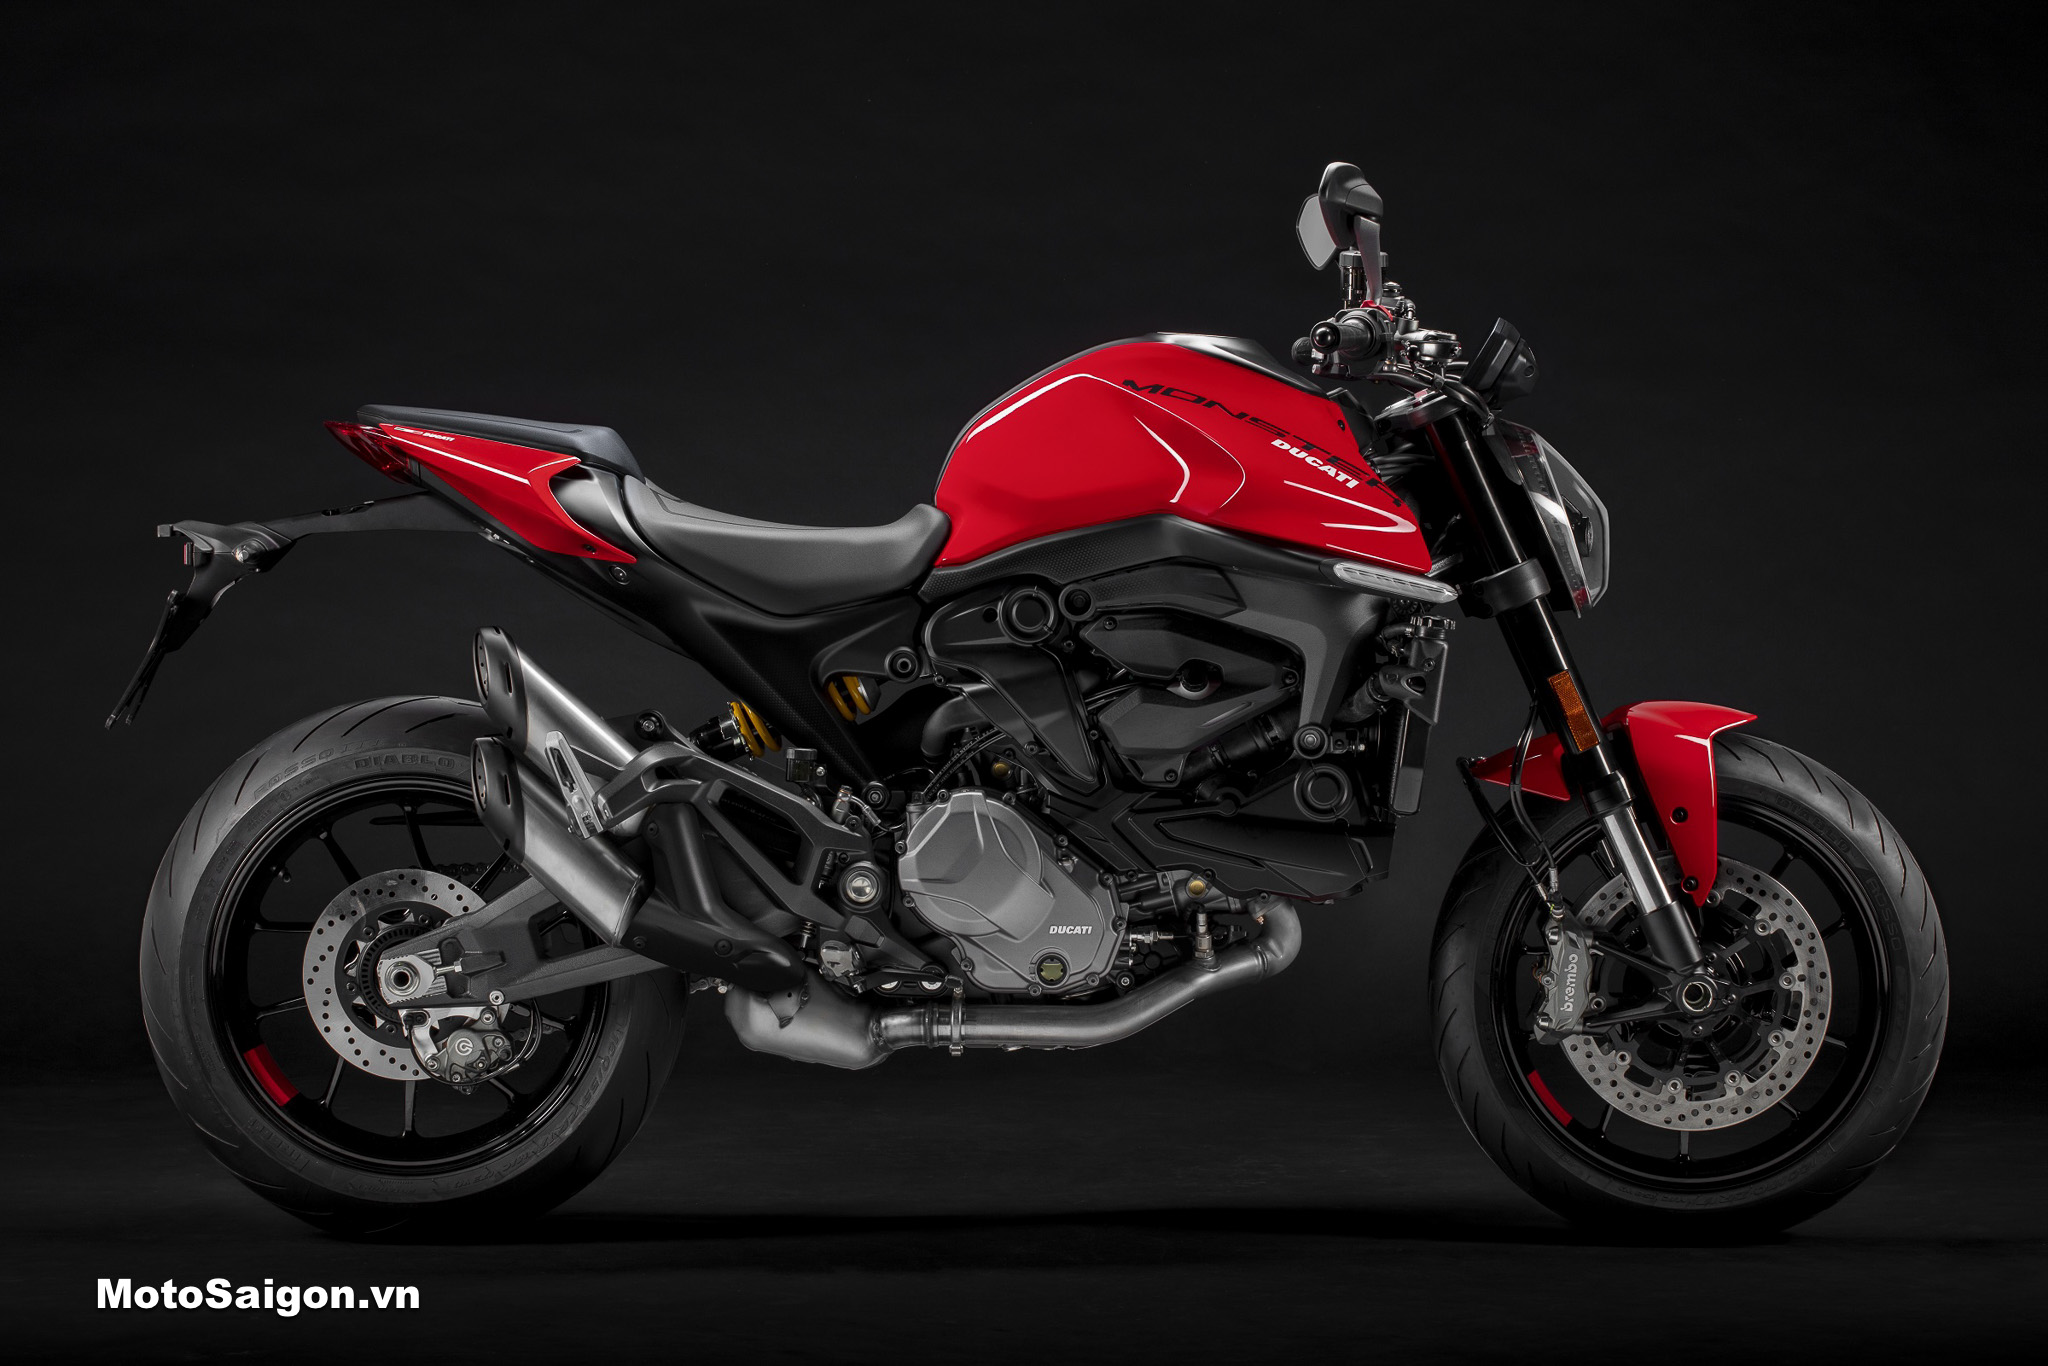 Sốc với siêu ưu đãi giá xe Ducati Monster 937 đến 62 triệu đồng